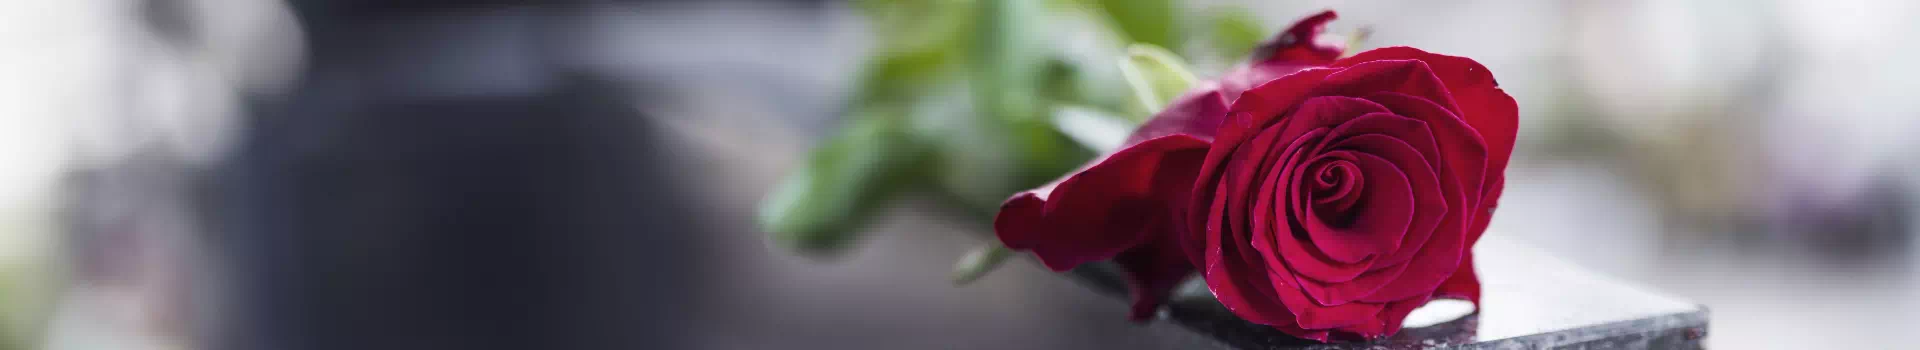 czerwona róża na nagrobku